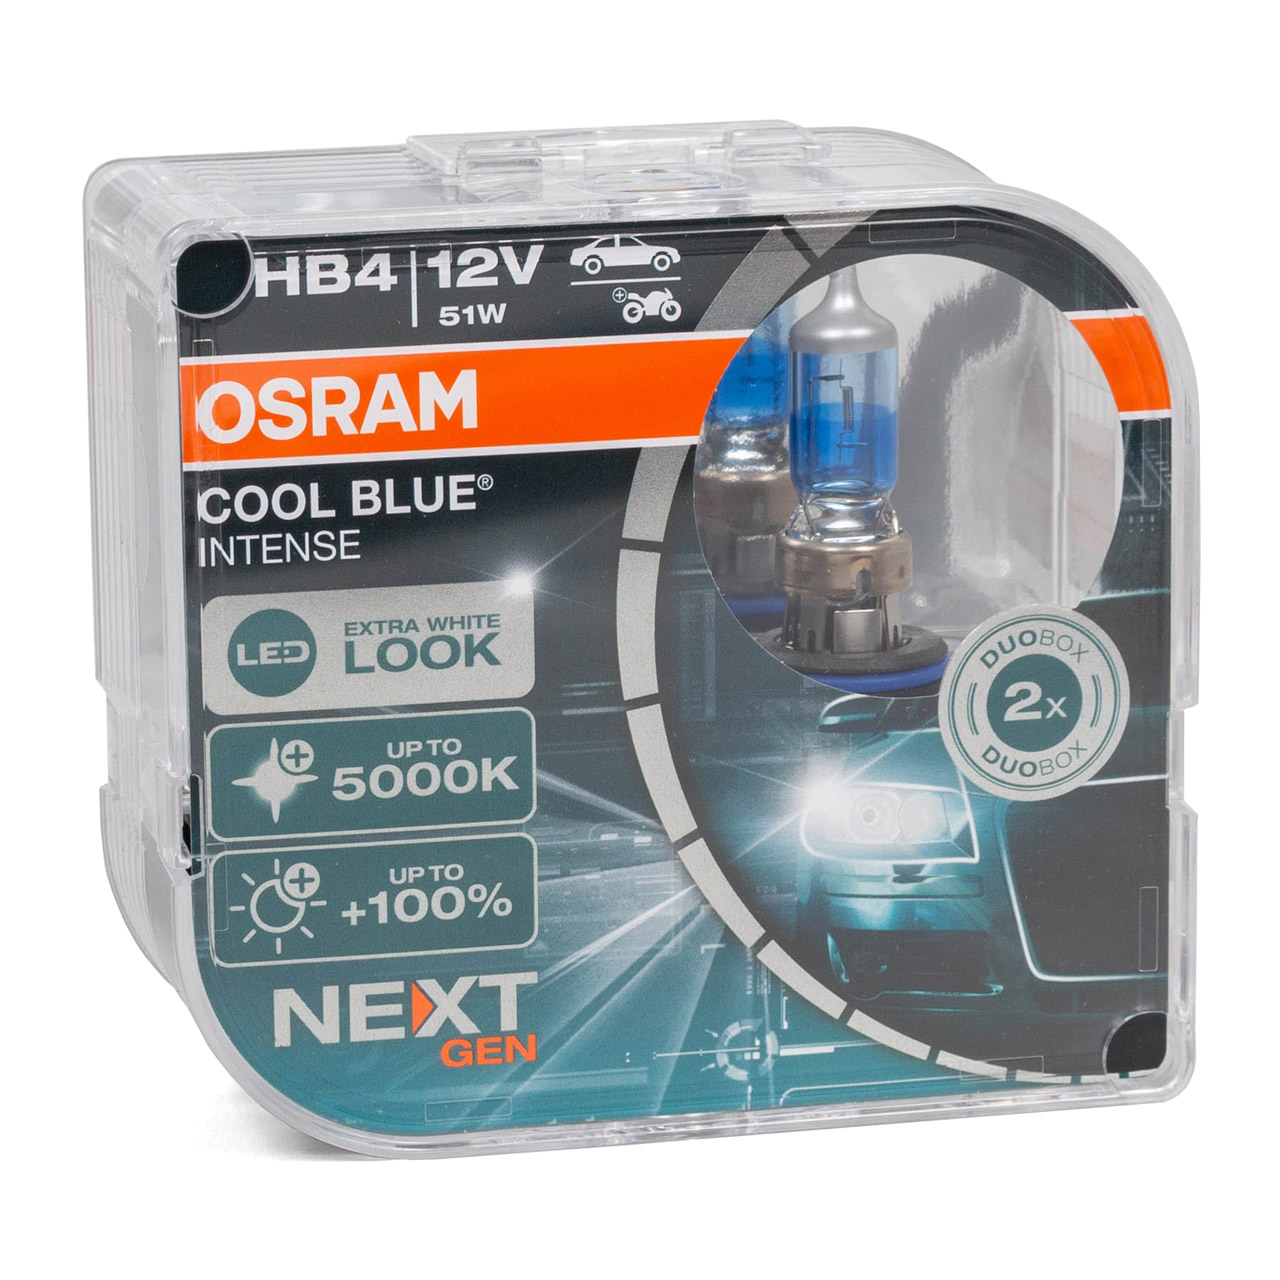 2x OSRAM Glühlampe HB4 COOL BLUE INTENSE Next Gen 12V 51W P22d +100% 5000K